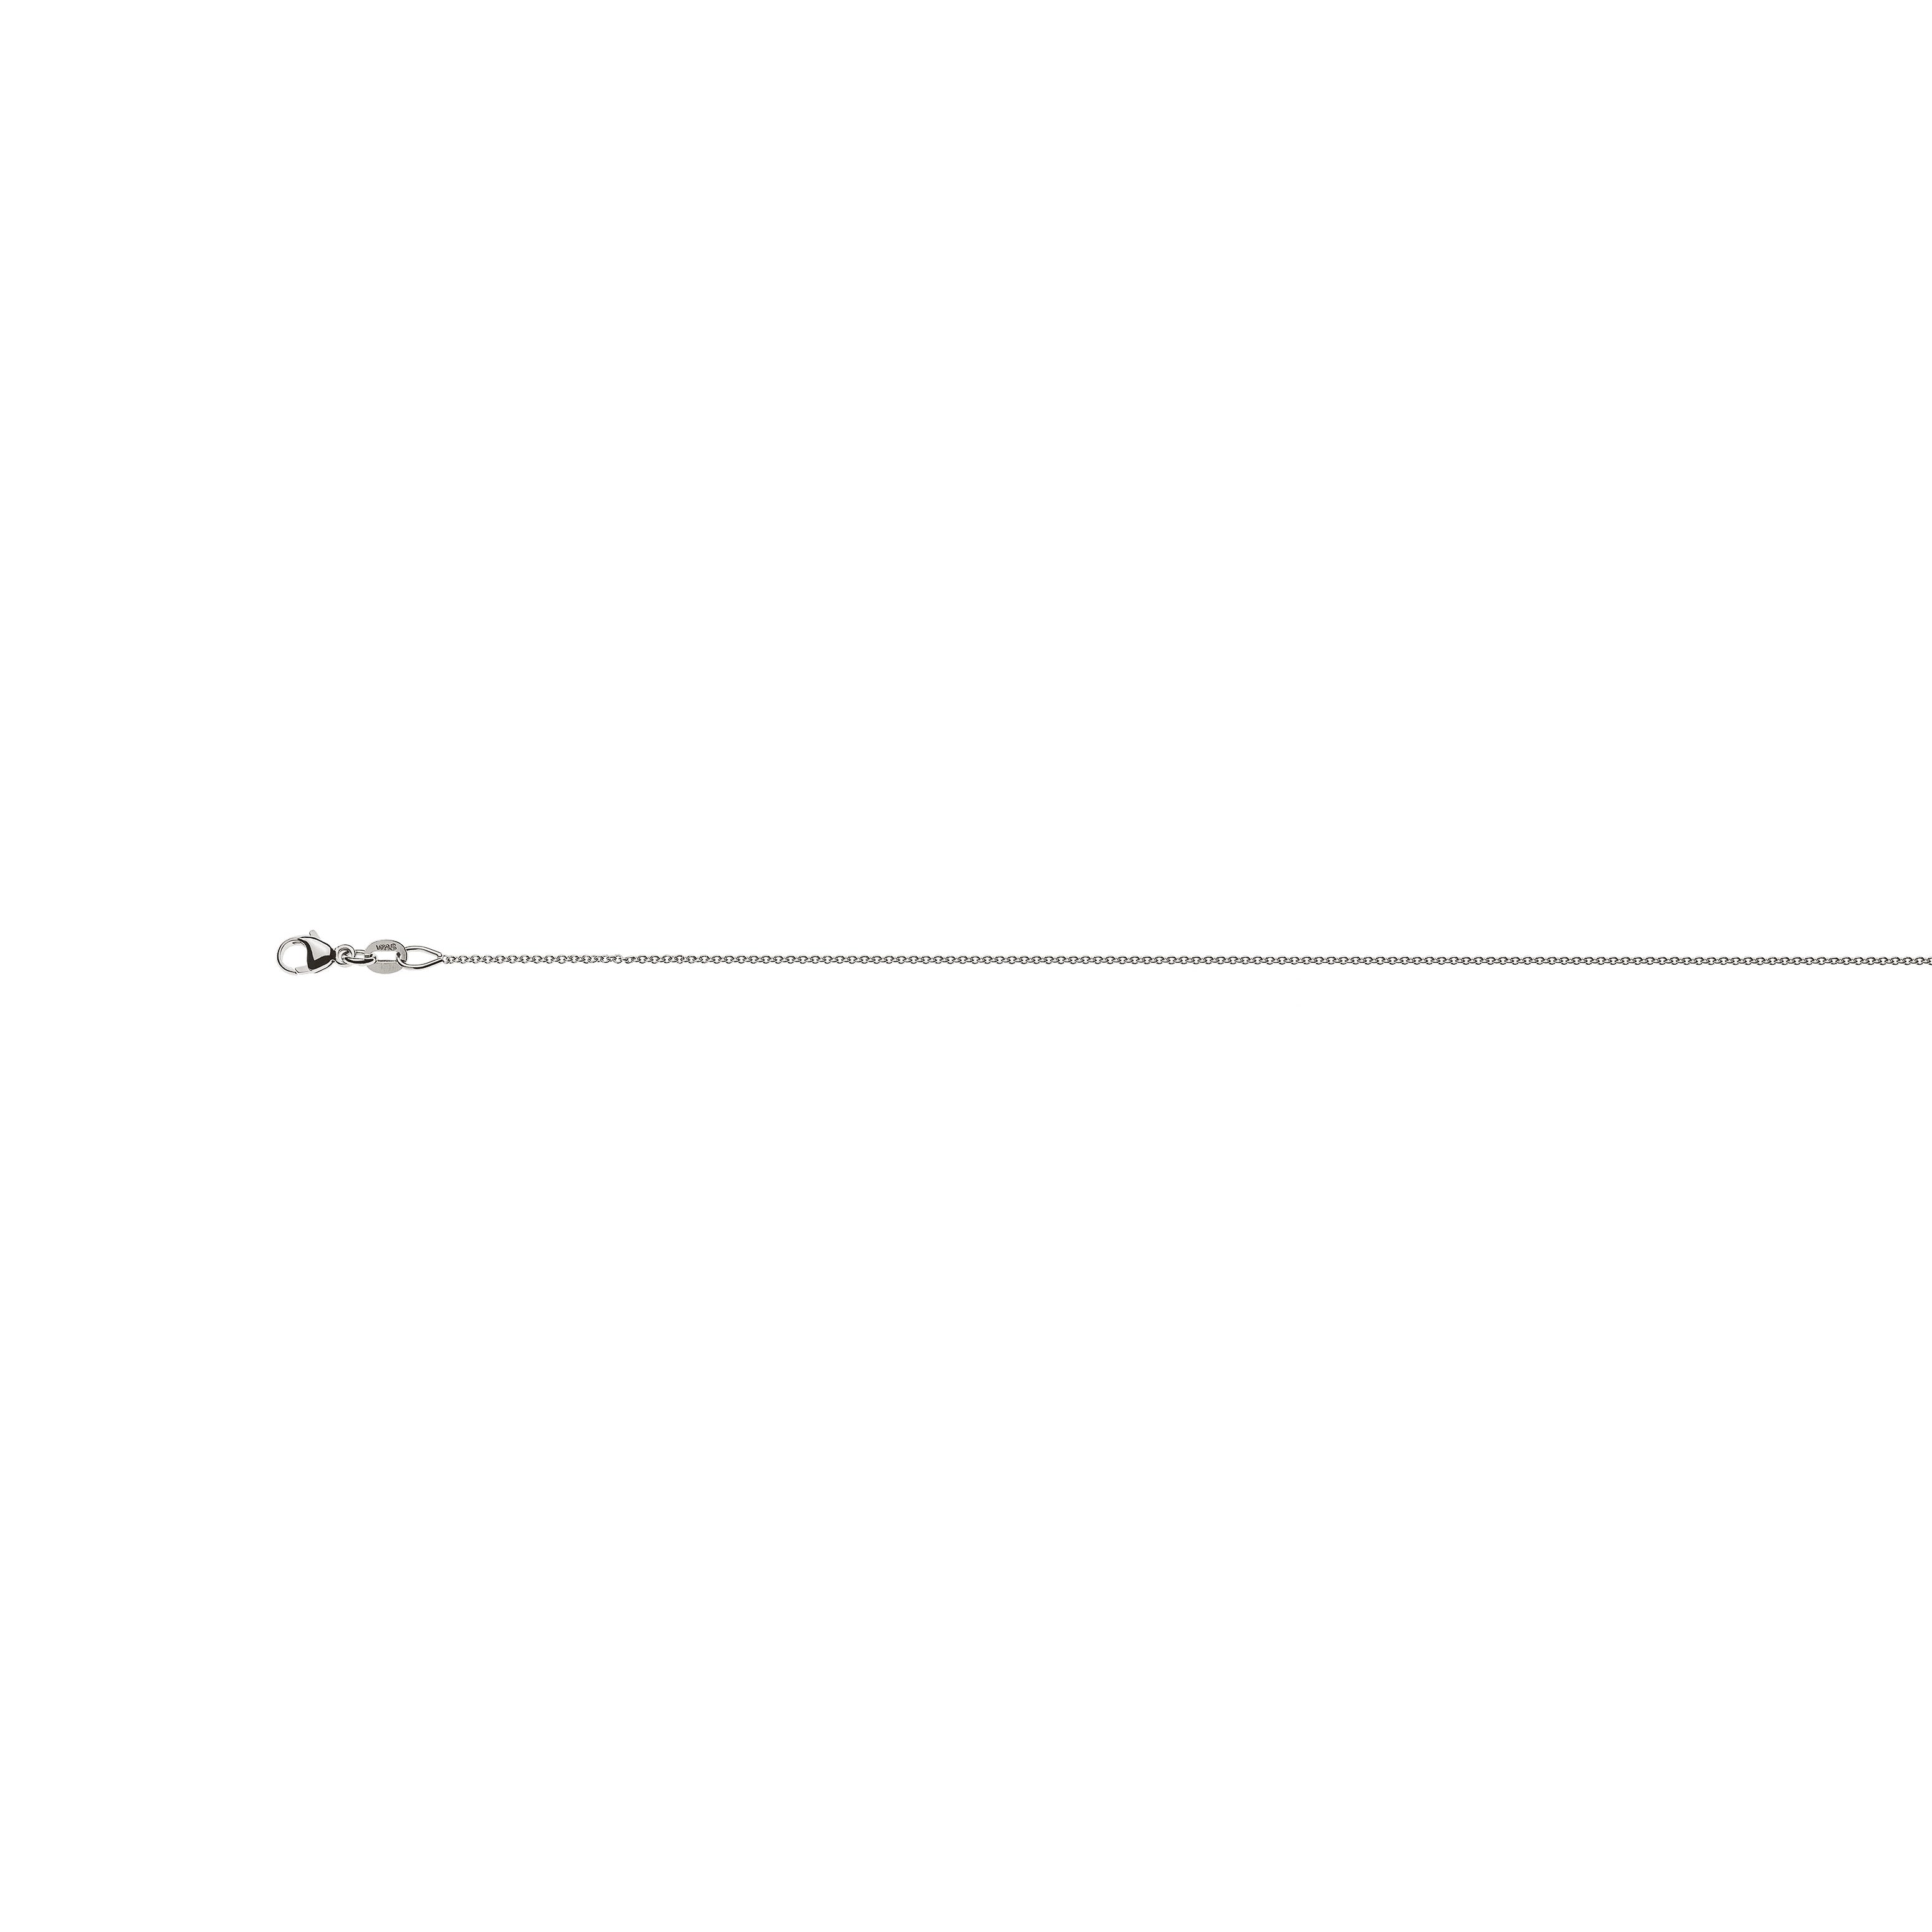 Rundanker Halskette aus 750er Weissgold: ca. 0,9 mm Breite